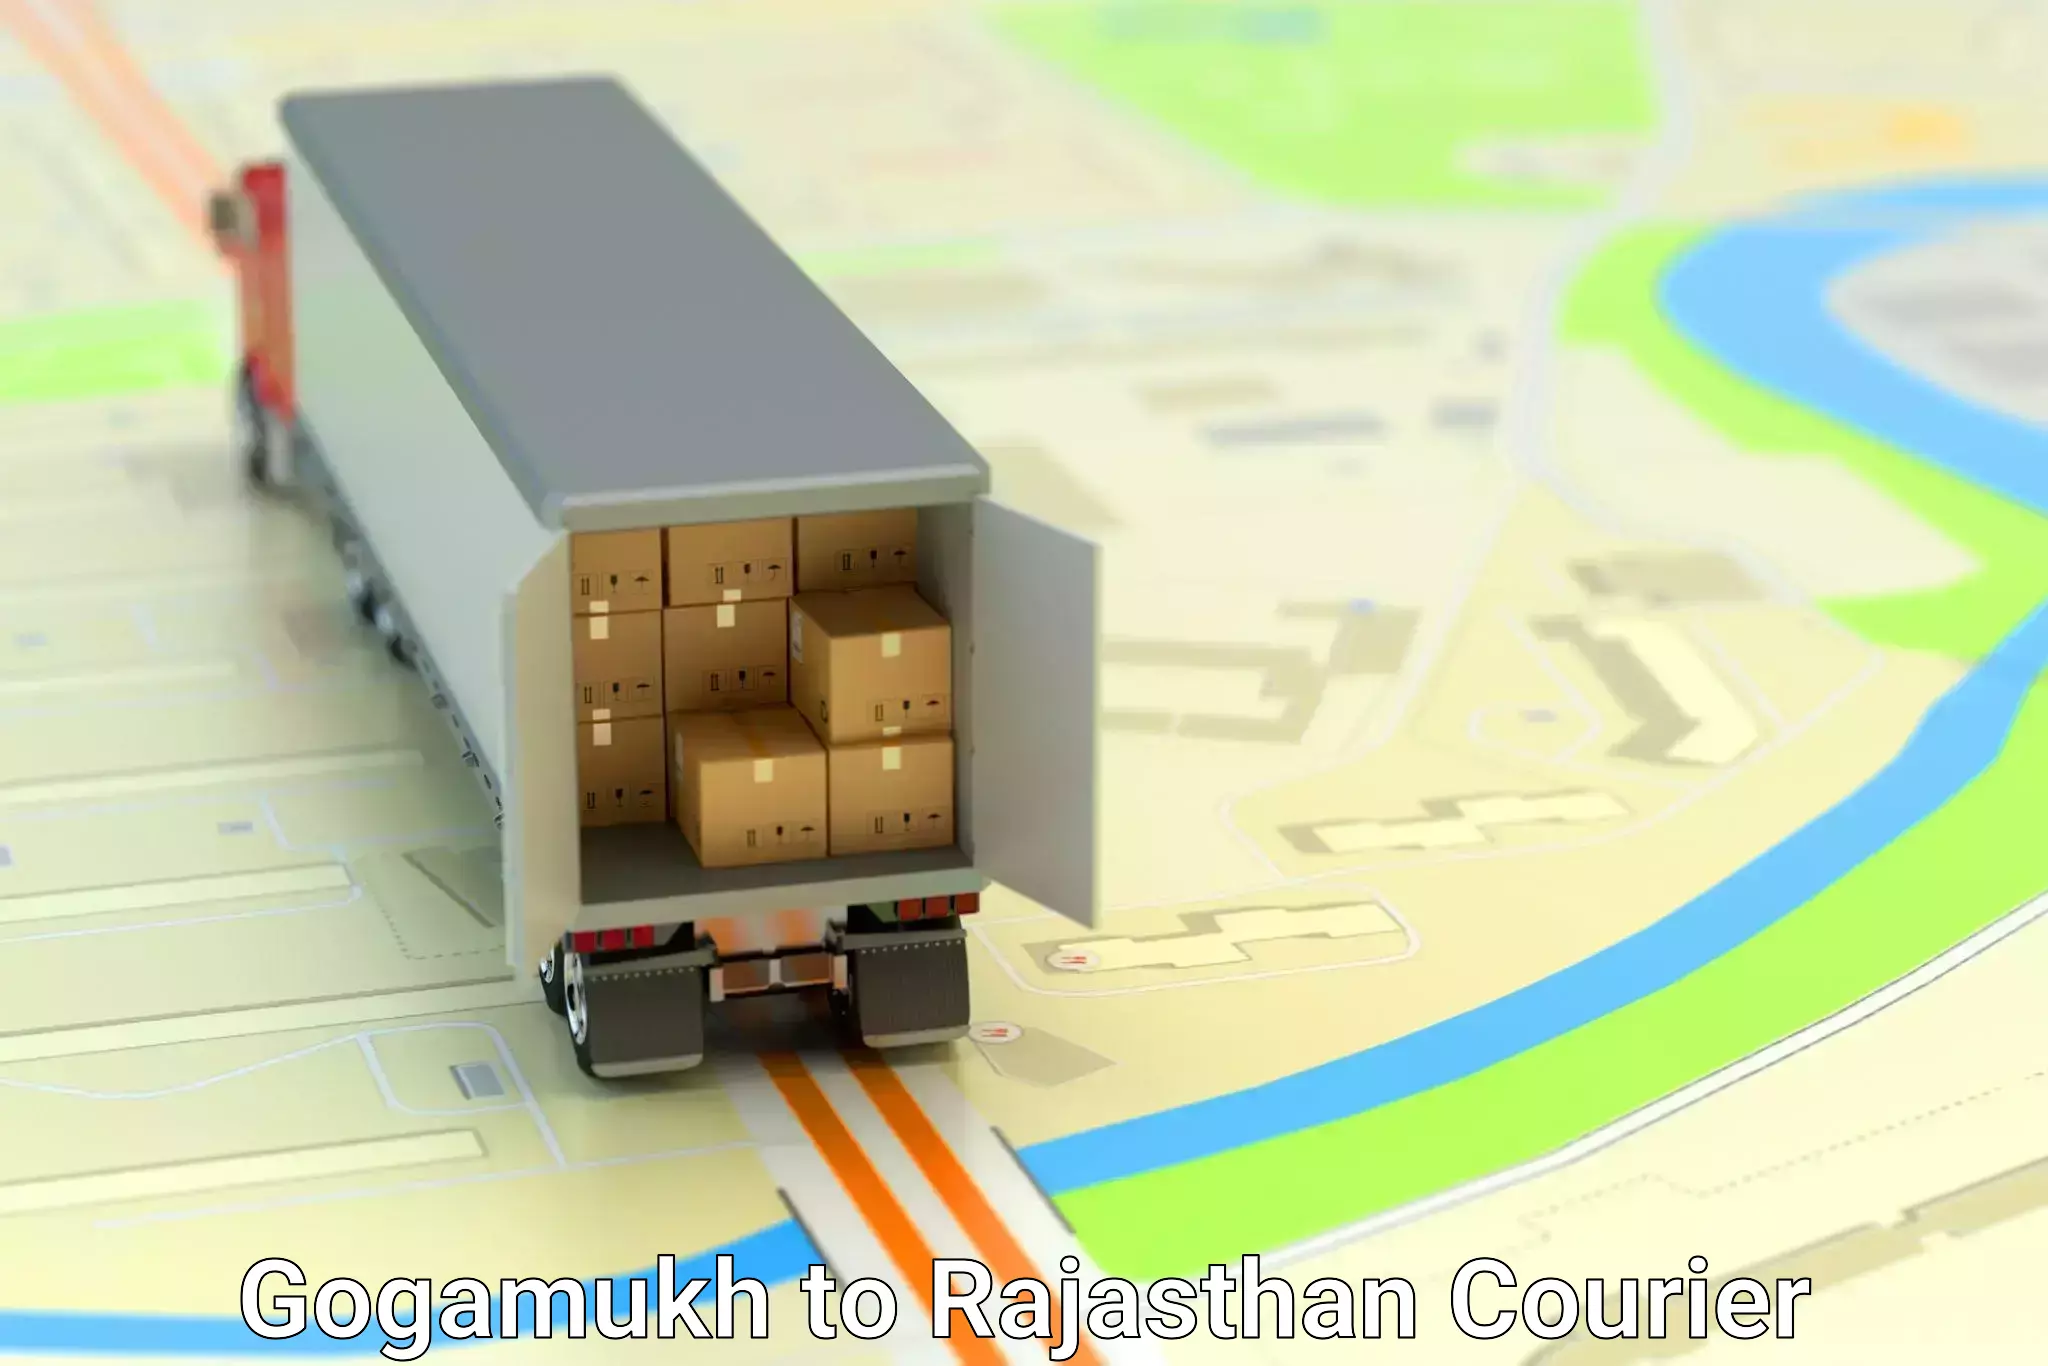 Business shipping needs Gogamukh to Kaman